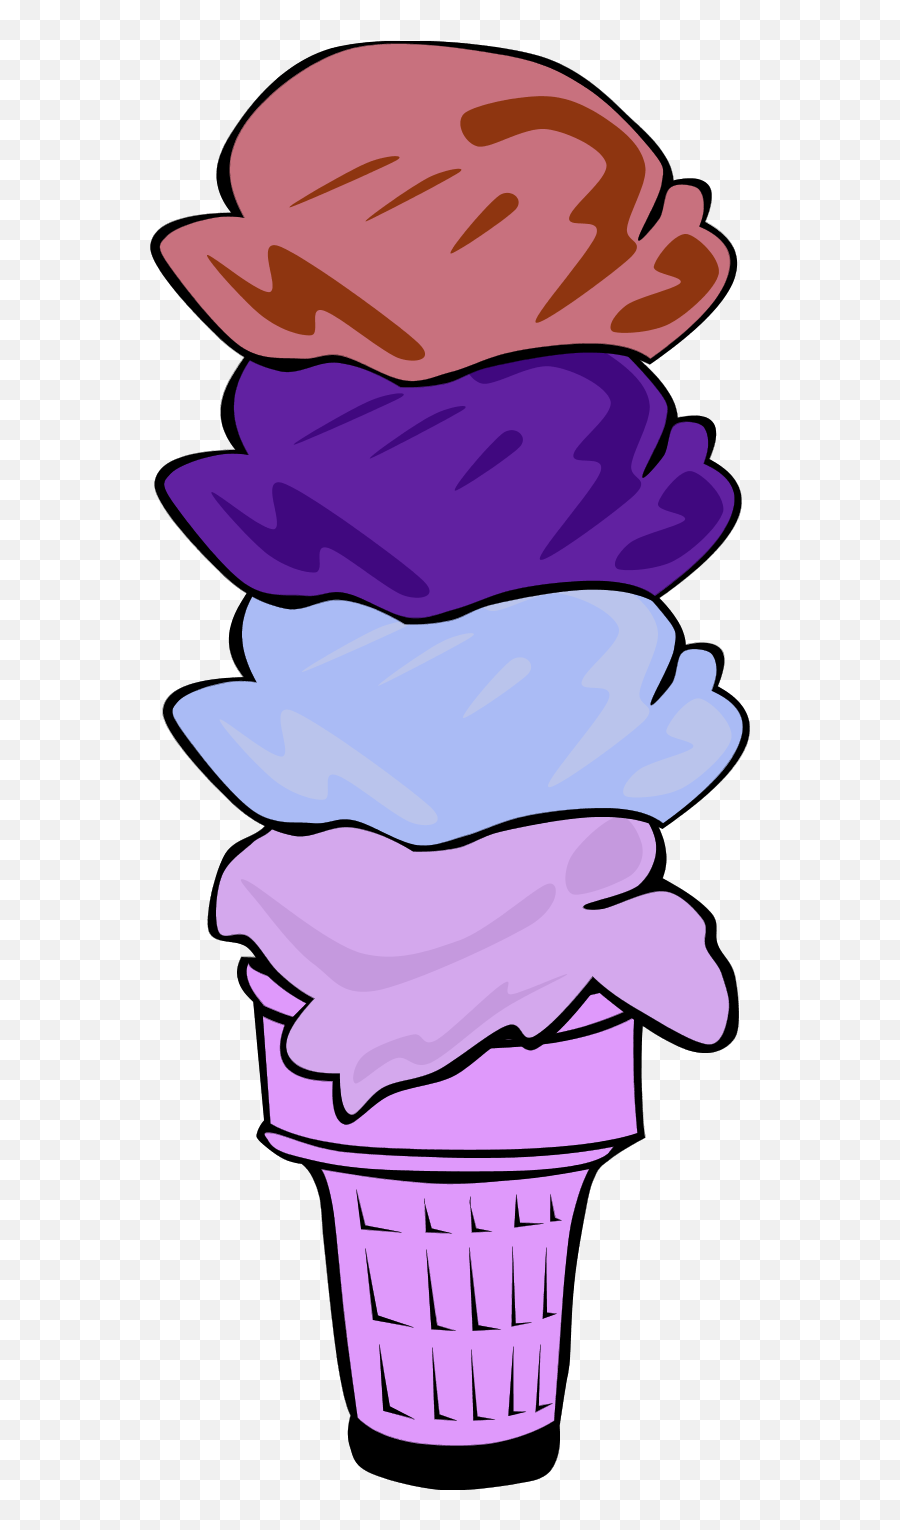 Four Scoop Ice Cream Cone - Ice Cream Emoji,Ice Cream Cone Clipart